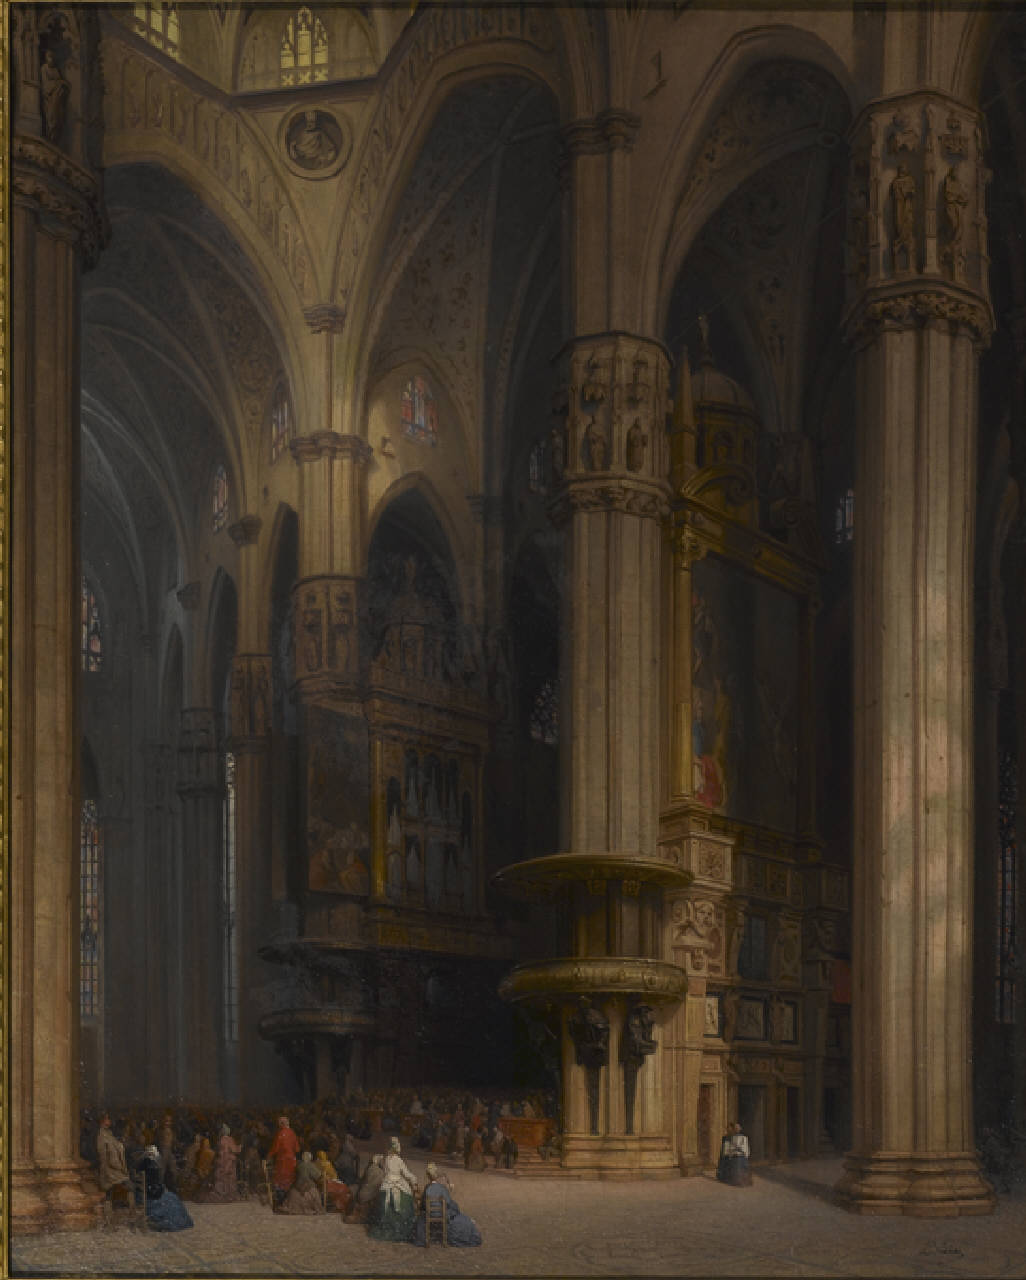 L'altare maggiore del Duomo di Milano, Interno del Duomo di Milano (dipinto) di Bisi Luigi - vedutismo romantico (sec. XIX)